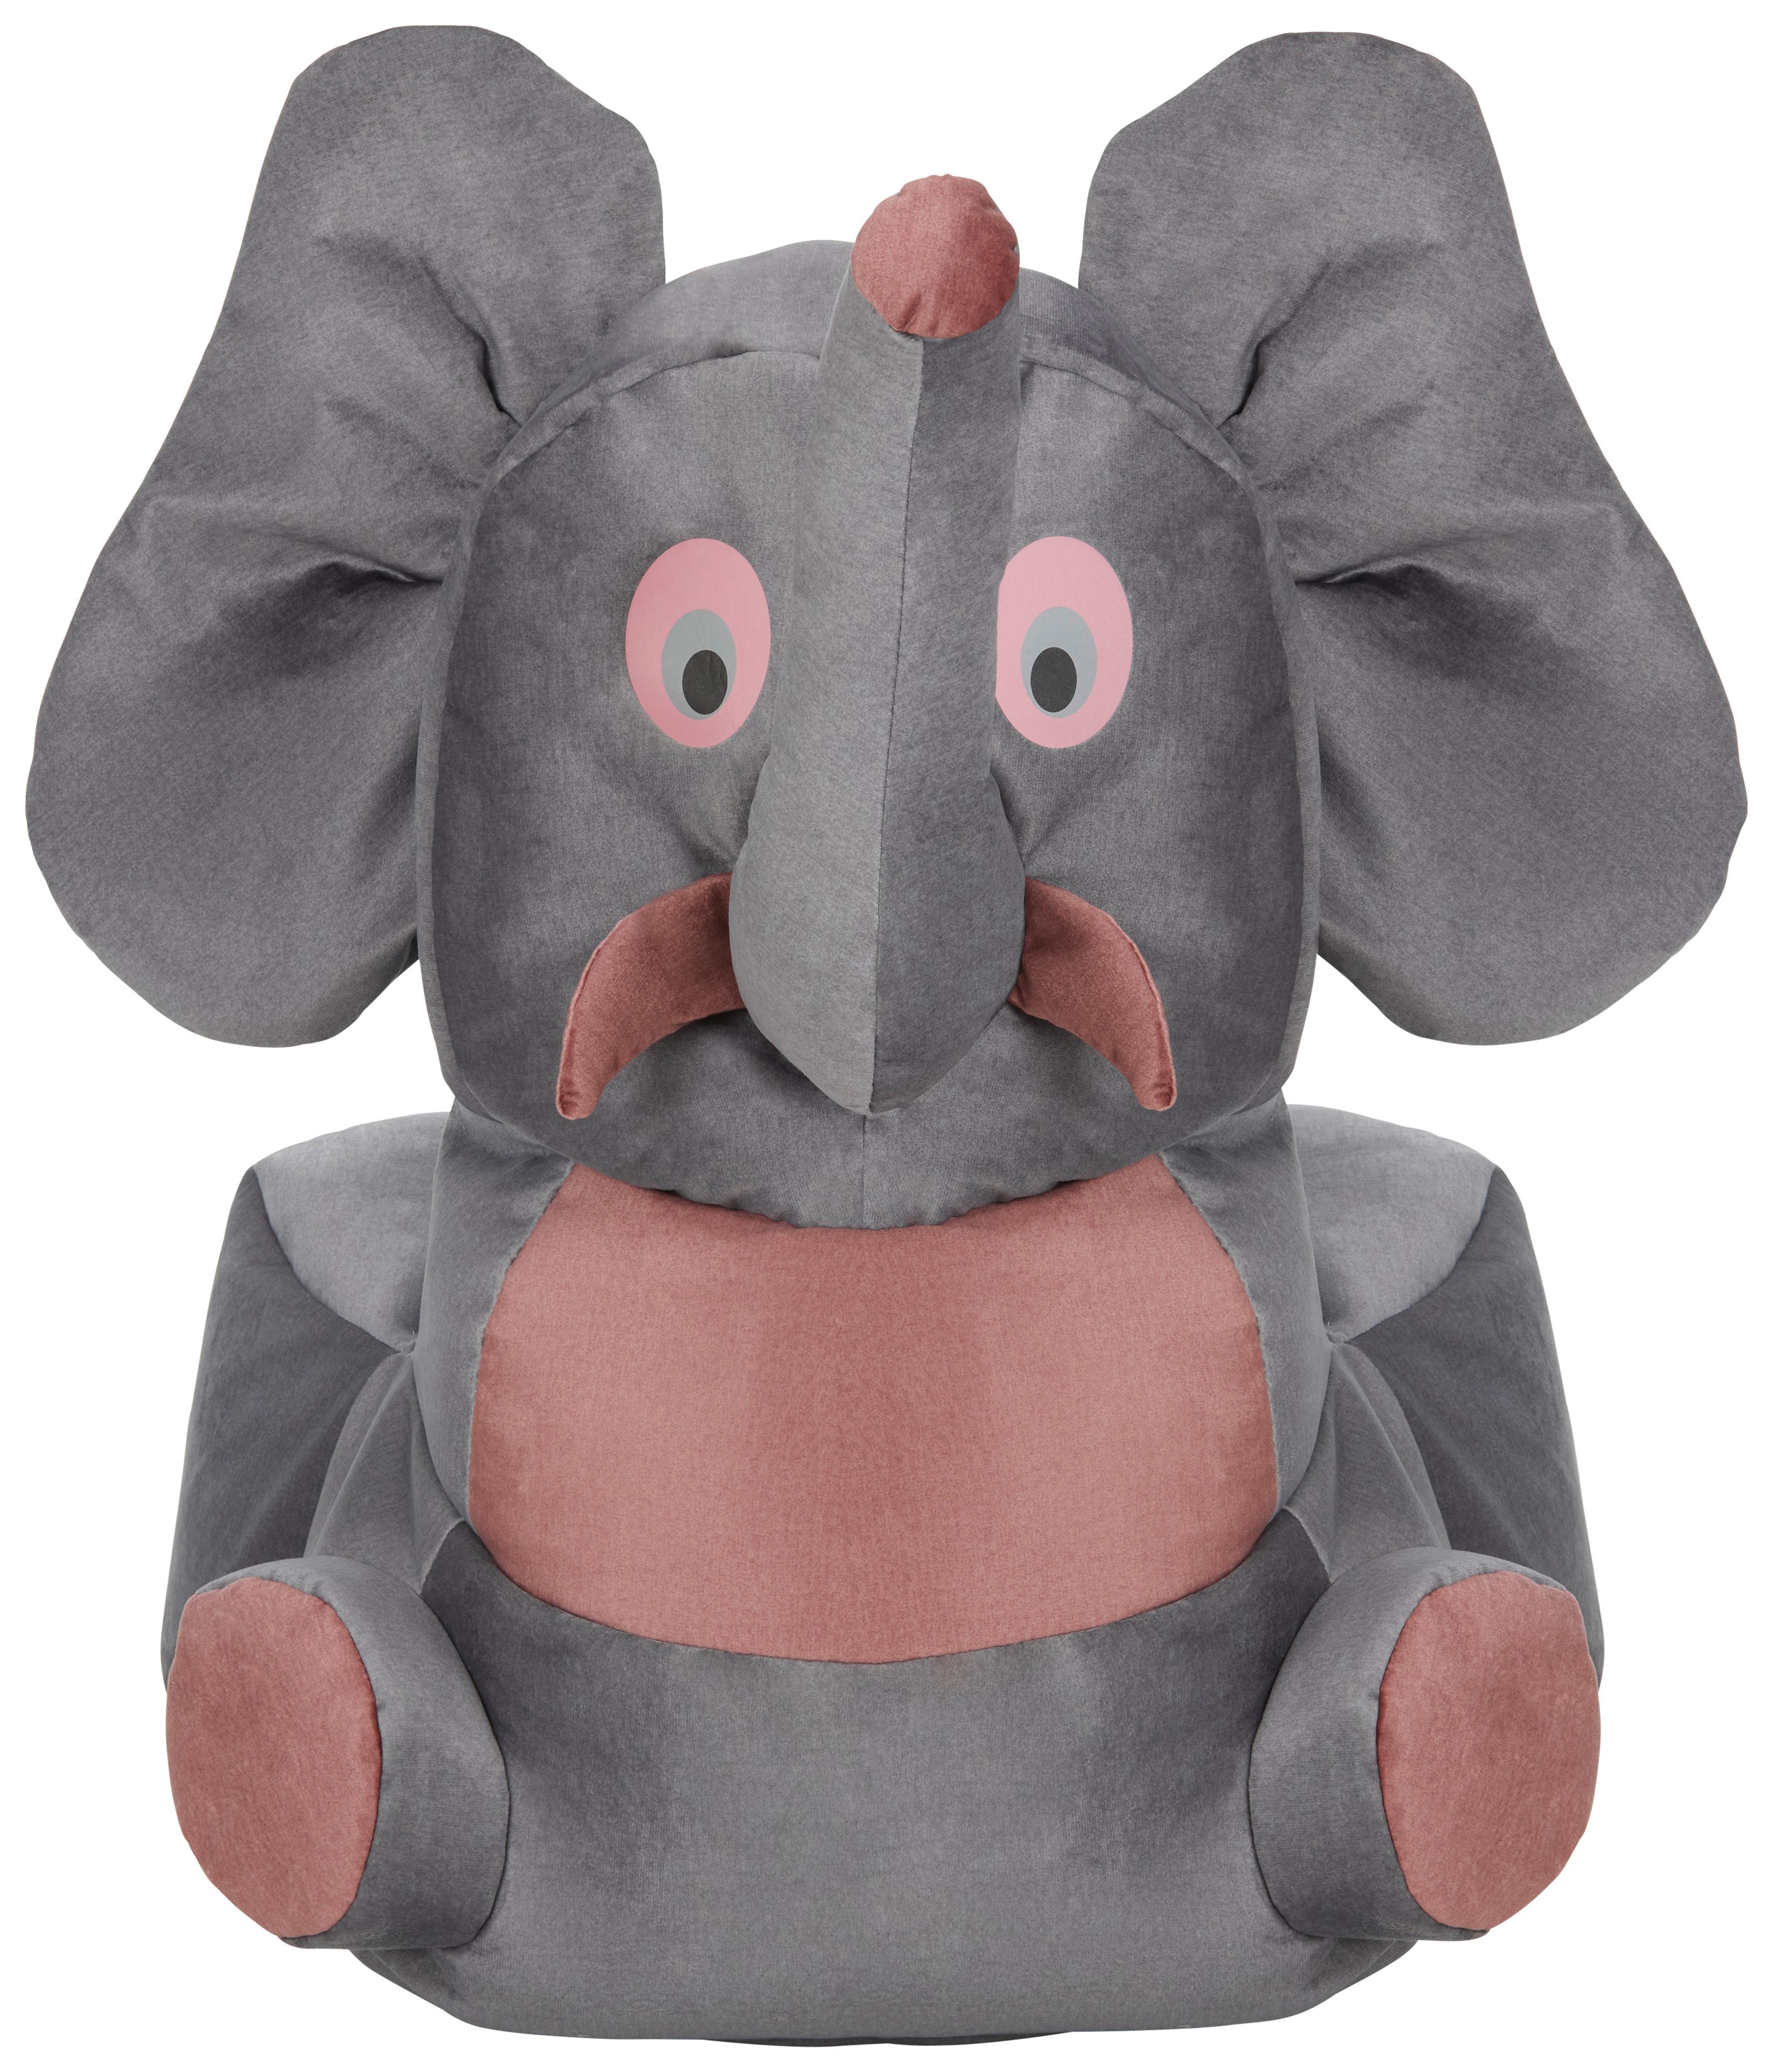 Dětský Sedací Vak Elephant - šedá/růžová, textil (55/80/75cm) - Modern Living